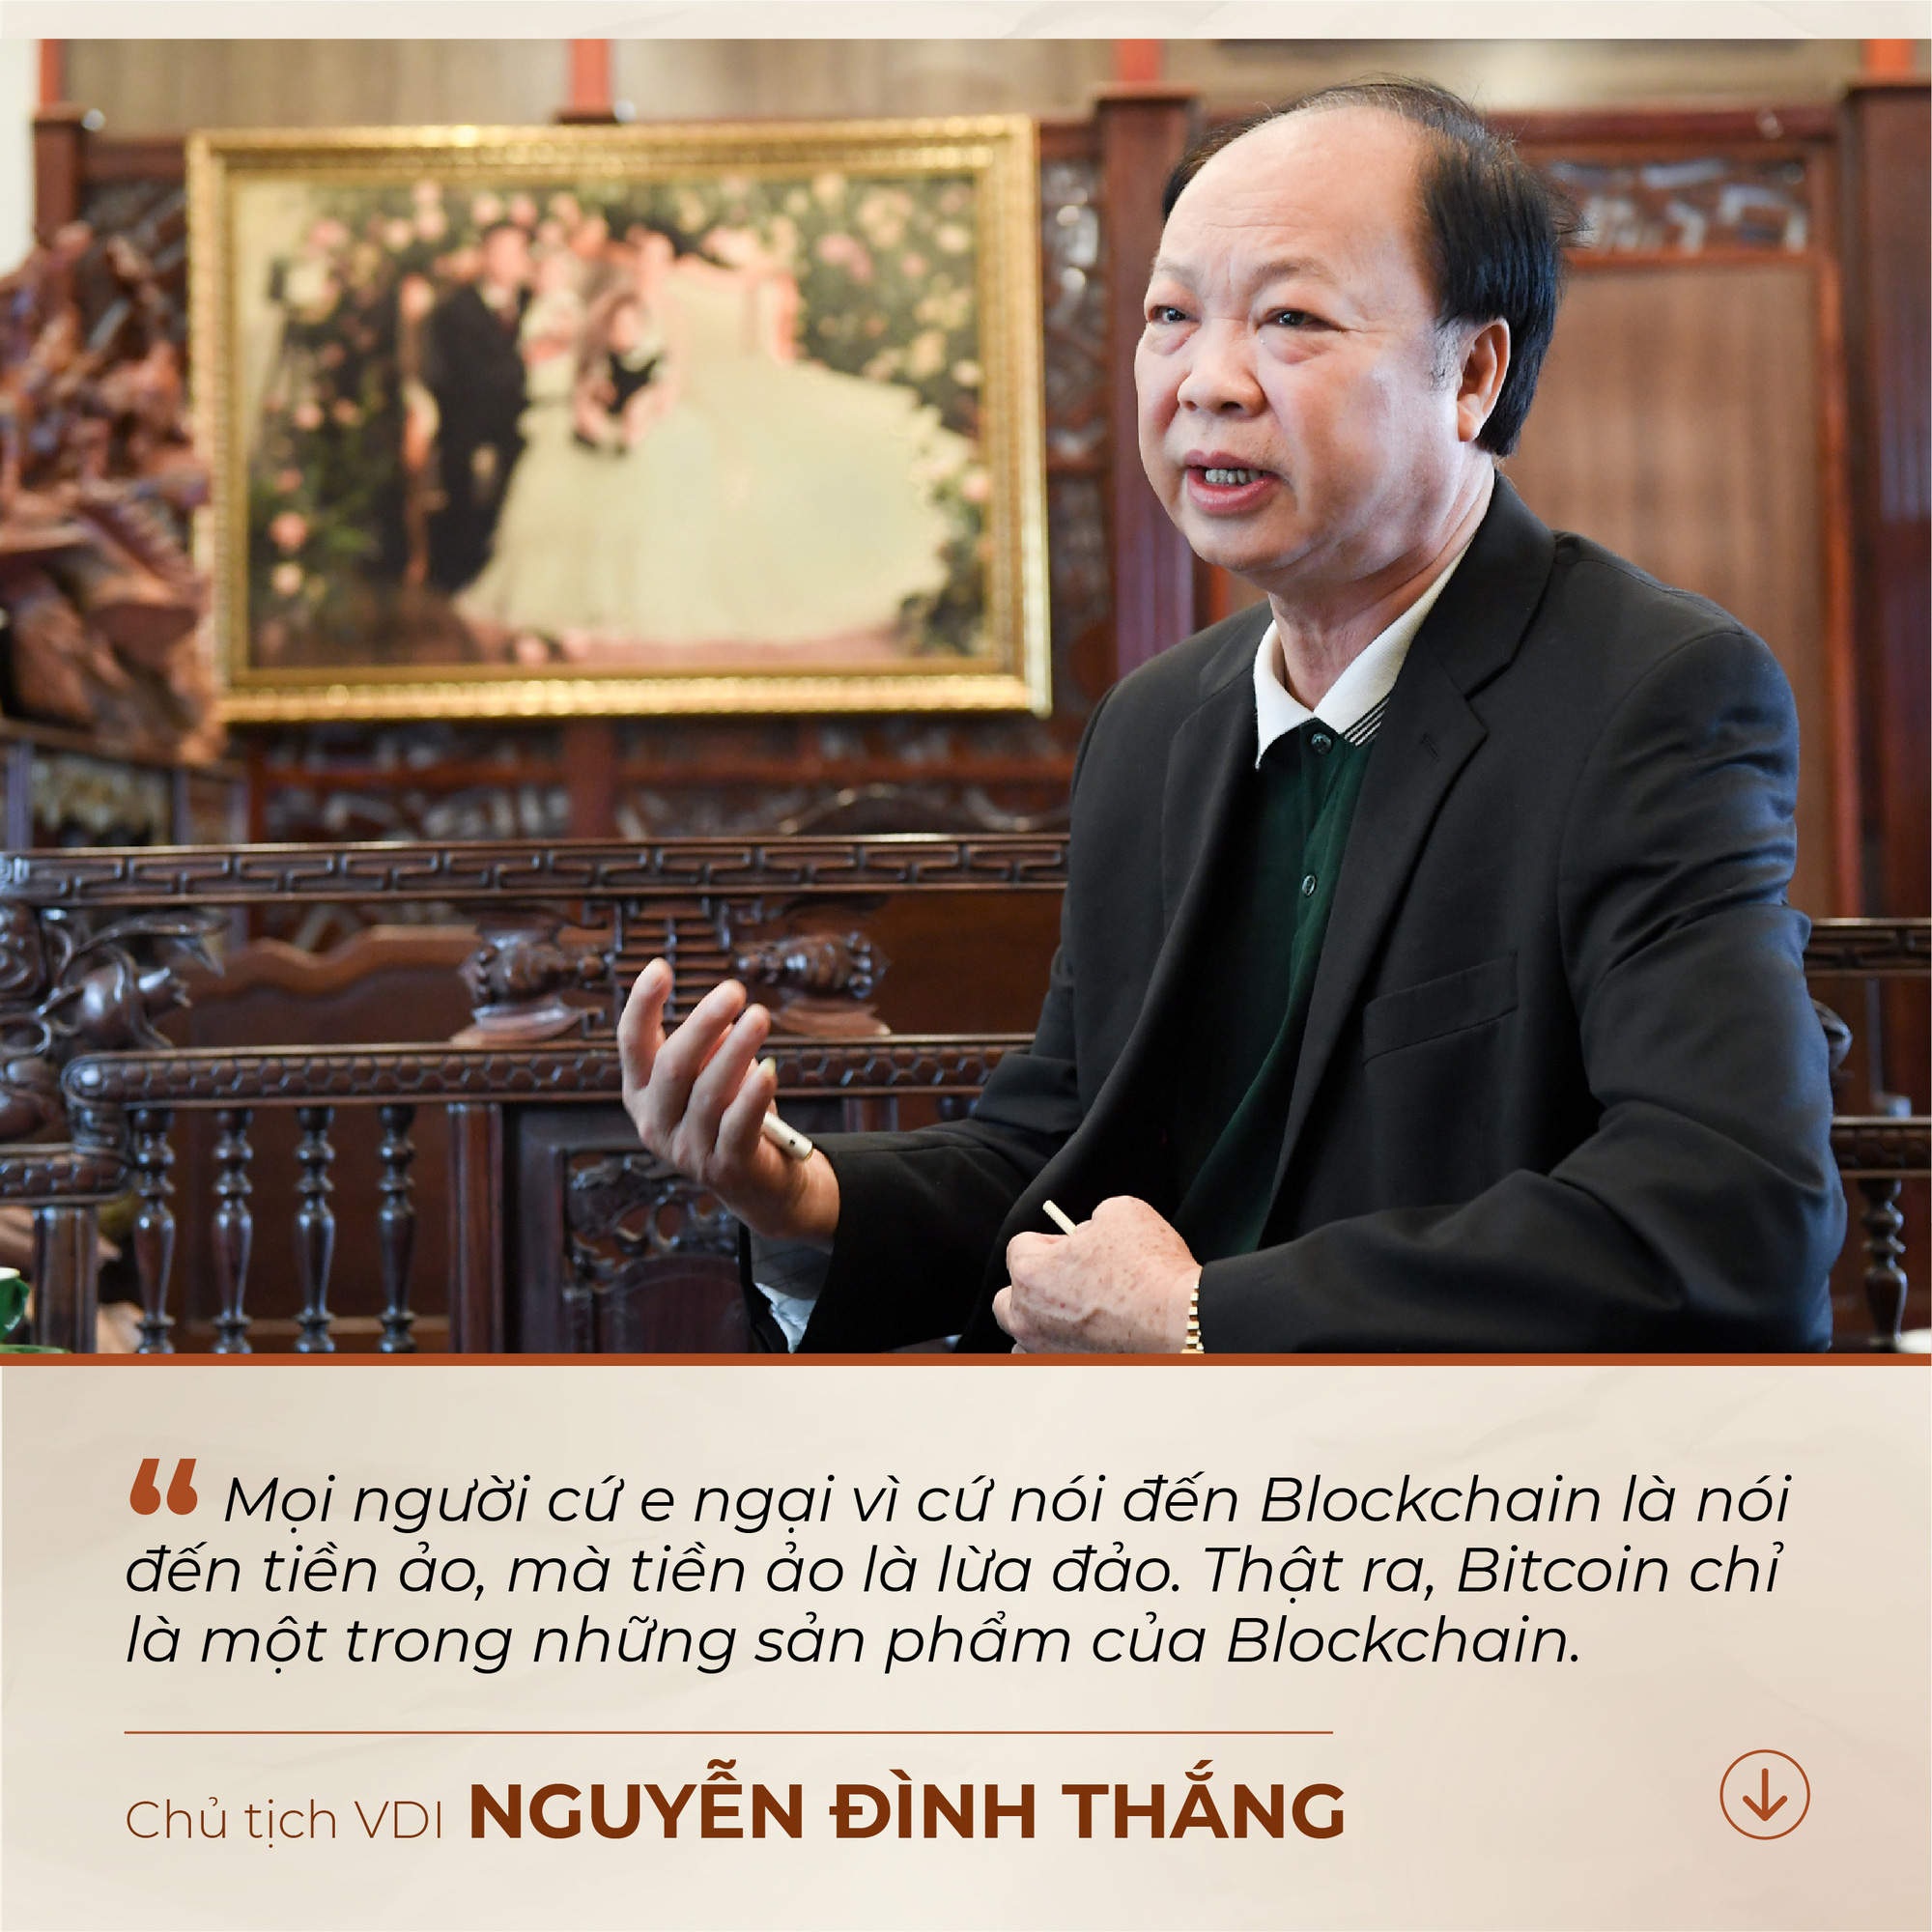 Chủ tịch VDI Nguyễn Đình Thắng: “Mọi người cứ nói đến blockchain là nói đến tiền ảo, mà tiền ảo là lừa đảo, thì ai cũng ngại” - Ảnh 2.